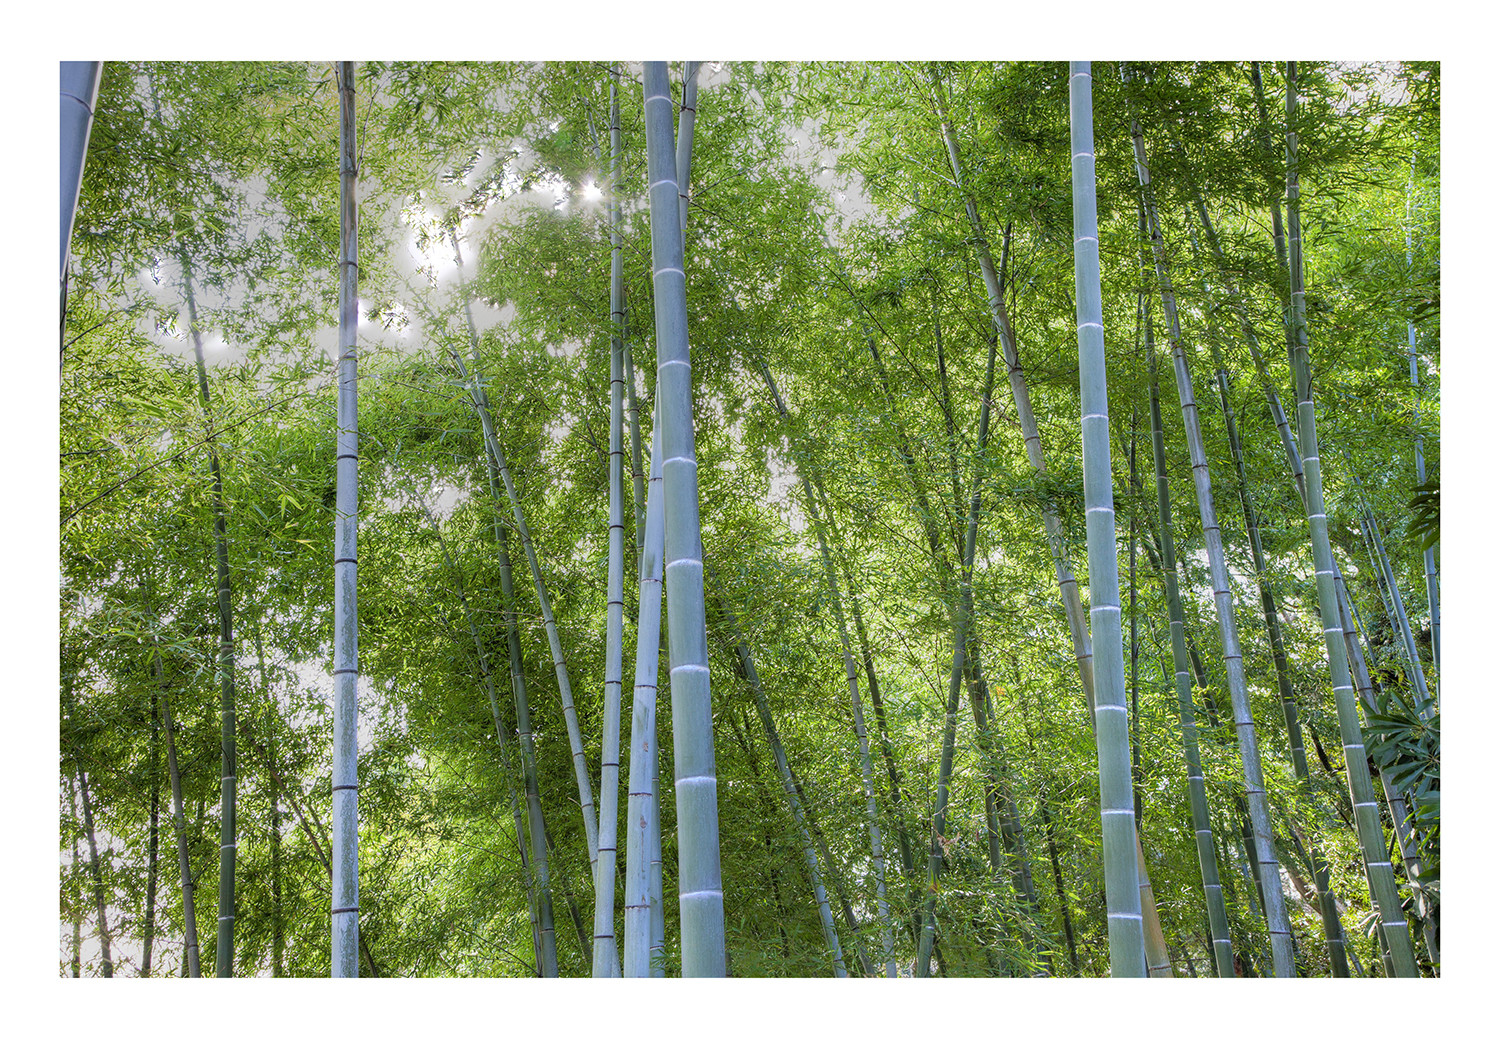 Many bamboo